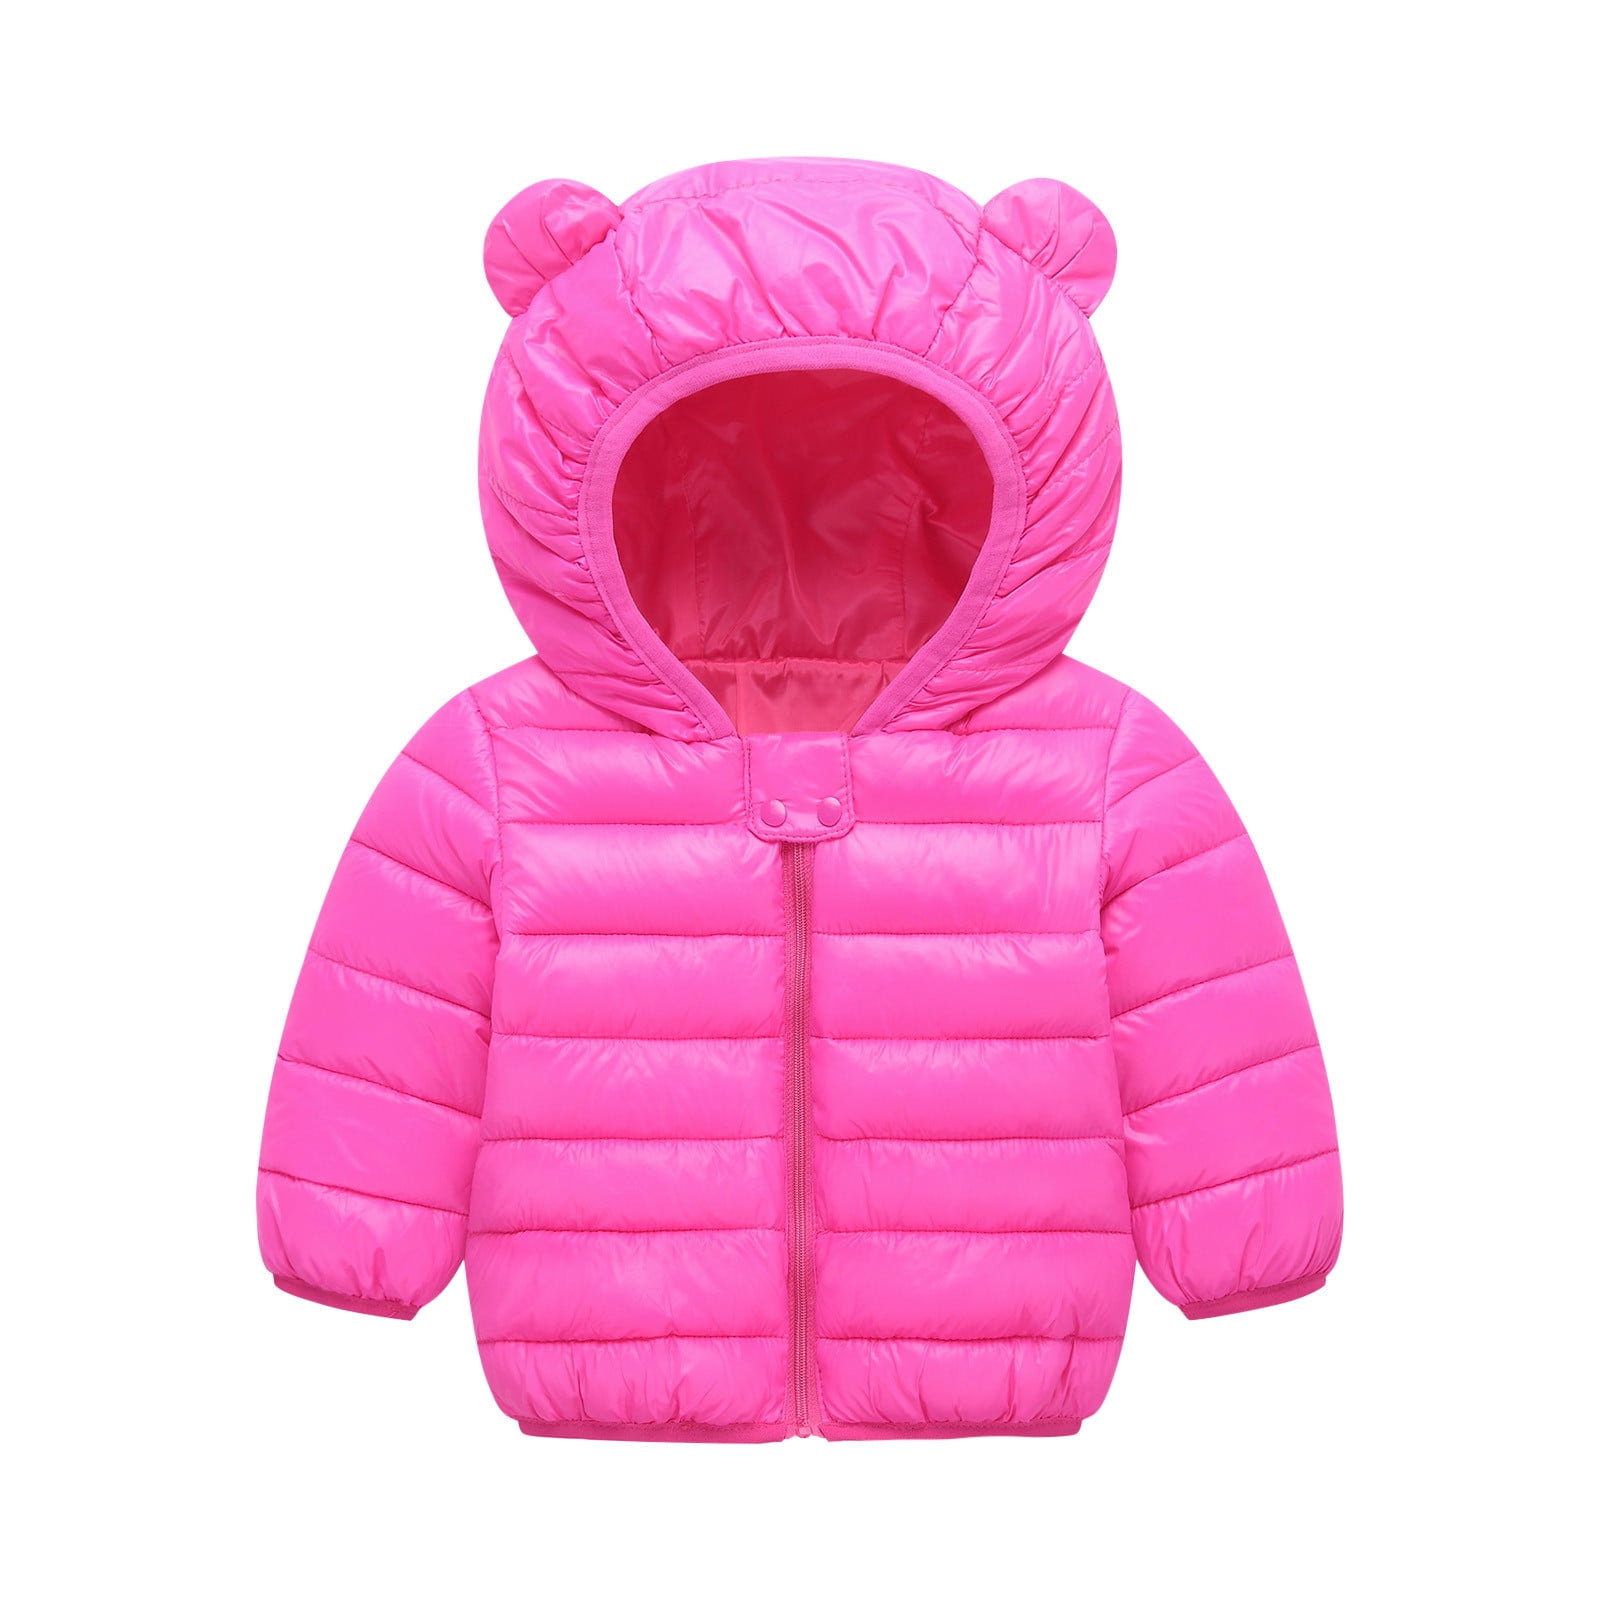 Skpabo Winter Coat for Toddler Baby Boys Girls Cute Bear Ear